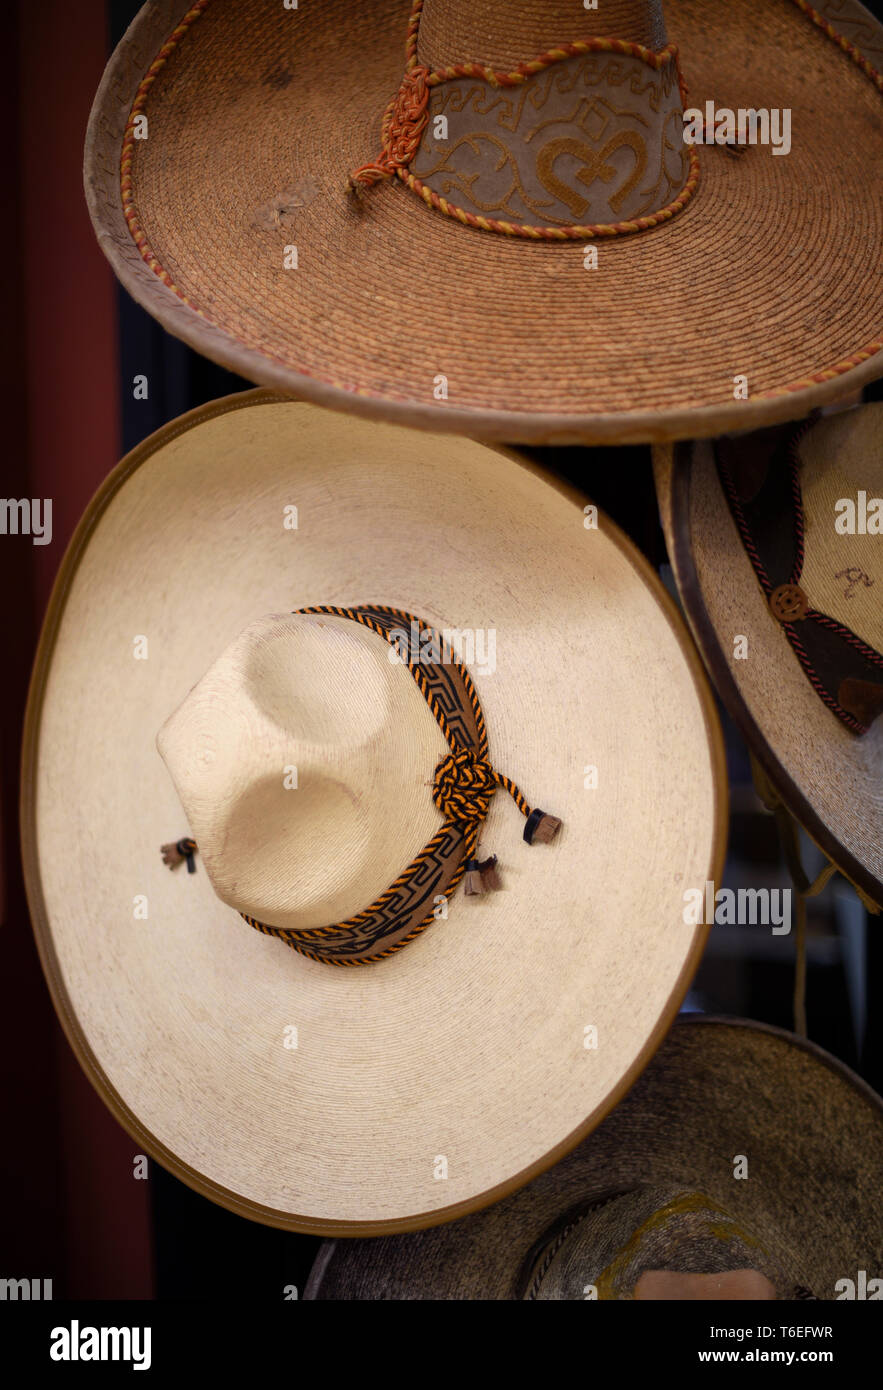 Vintage sombreros messicani per la vendita in un negozio a Santa Fe, New Mexico USA Foto Stock